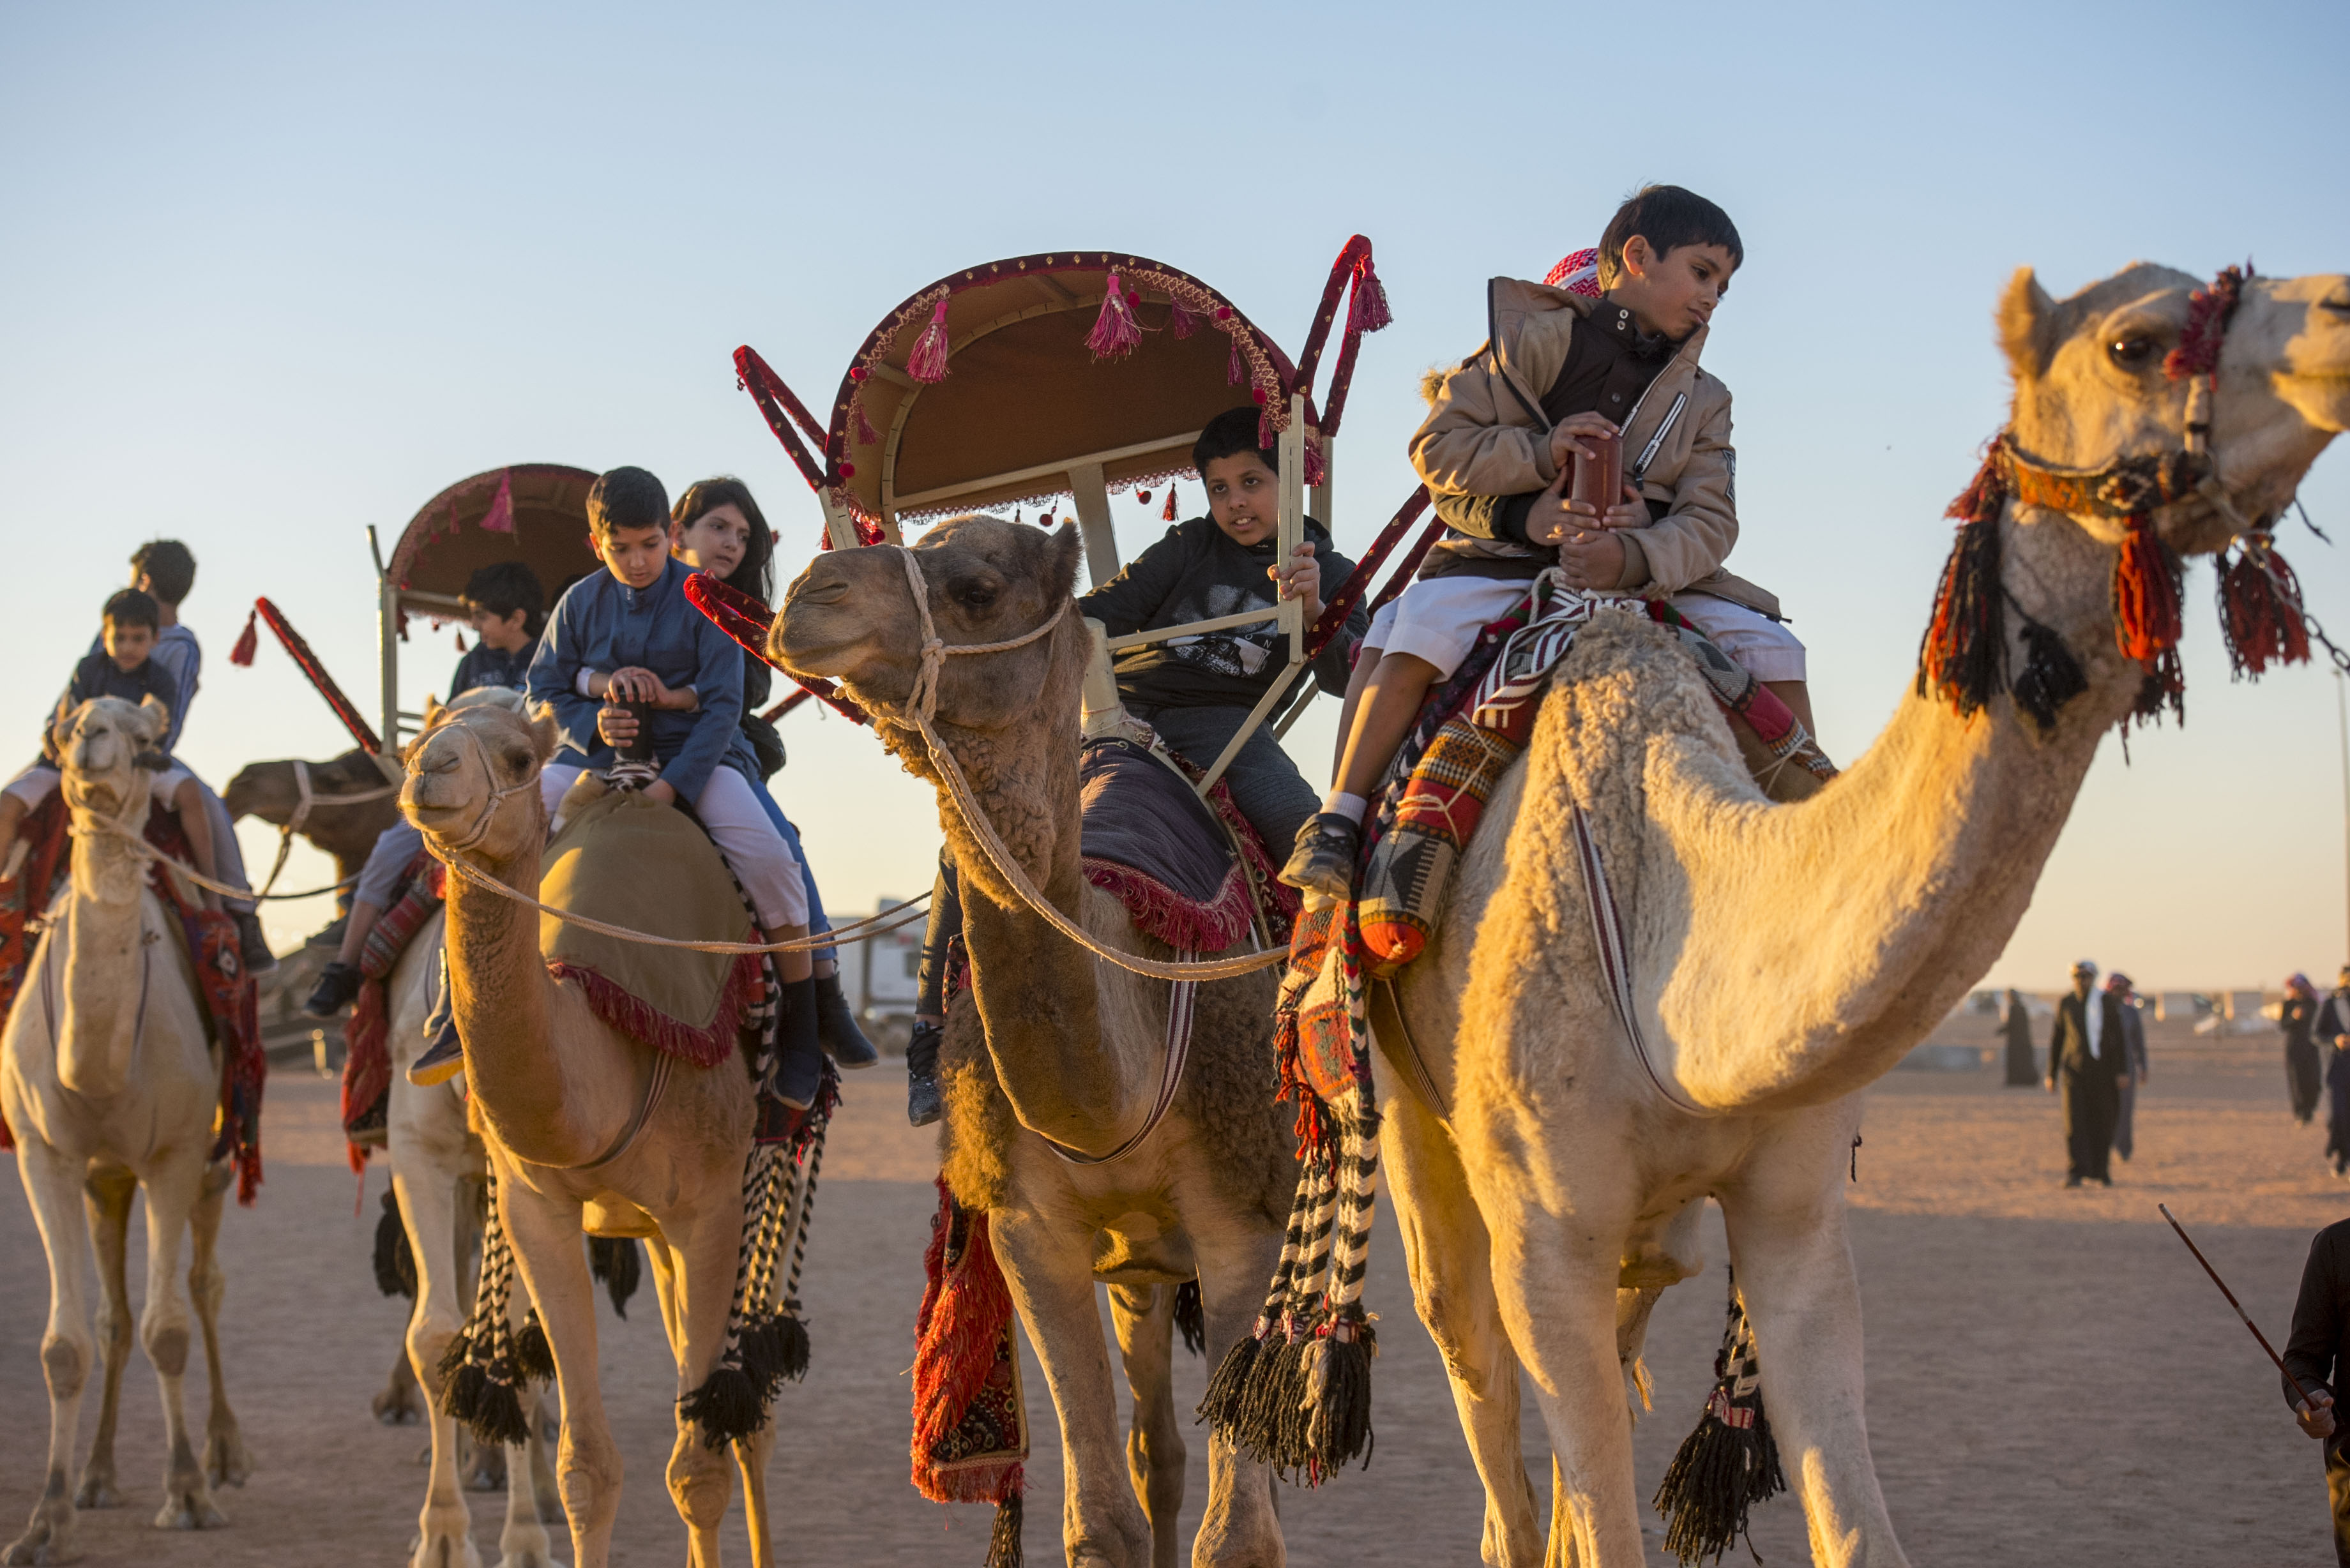 مهرجان الملك عبدالعزيز يستعرض ثقافات الشعوب في تزيين الإبل